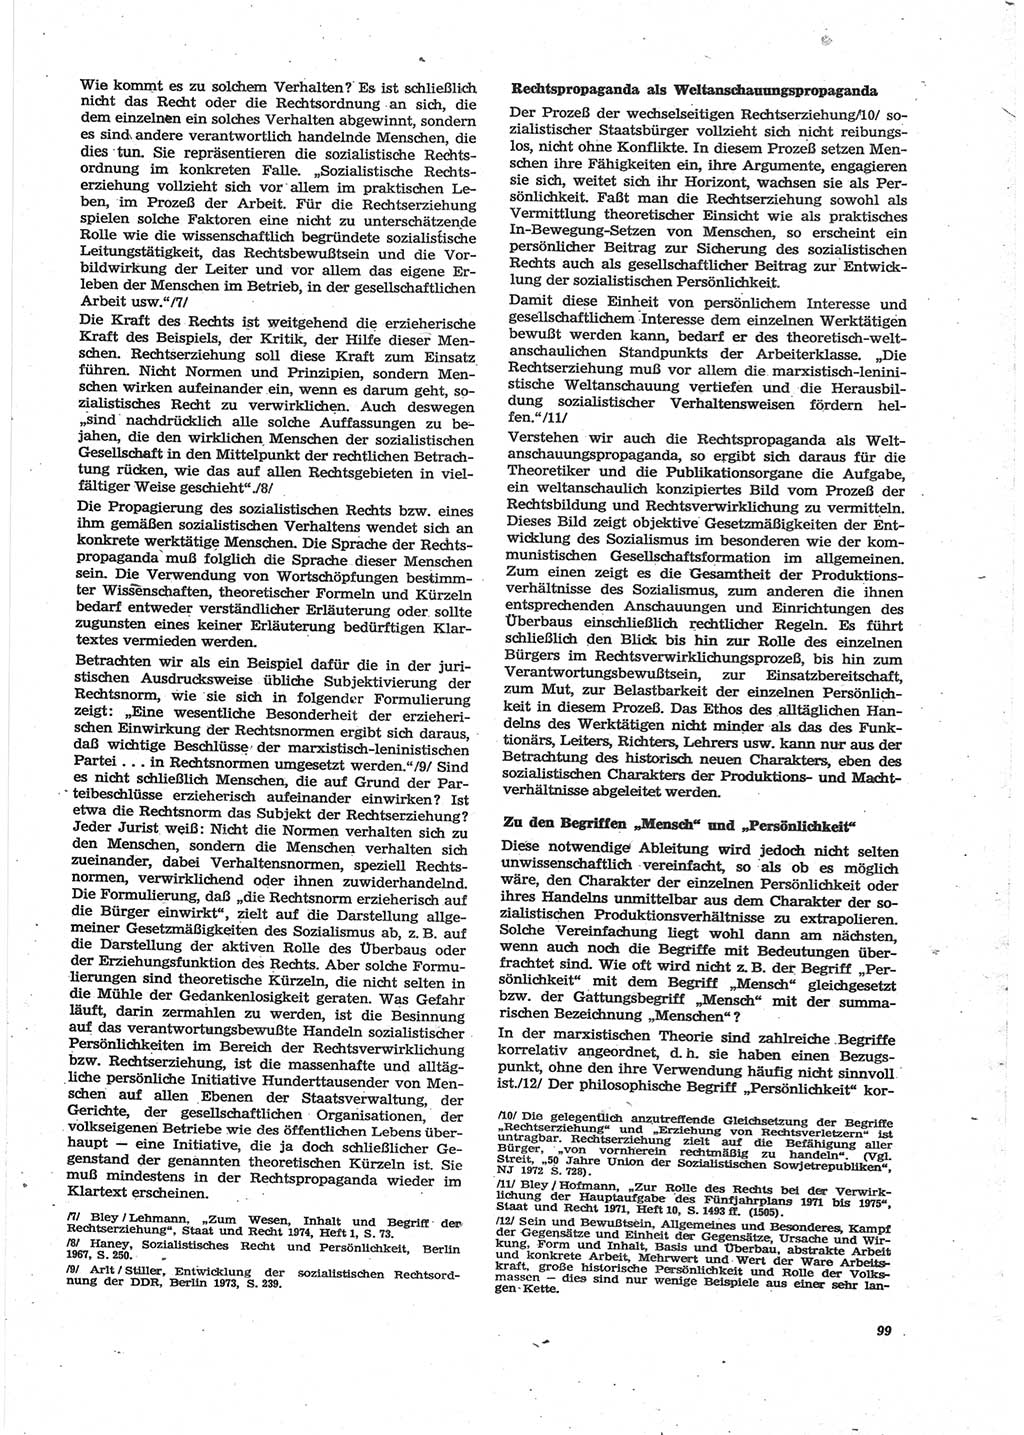 Neue Justiz (NJ), Zeitschrift für Recht und Rechtswissenschaft [Deutsche Demokratische Republik (DDR)], 28. Jahrgang 1974, Seite 99 (NJ DDR 1974, S. 99)